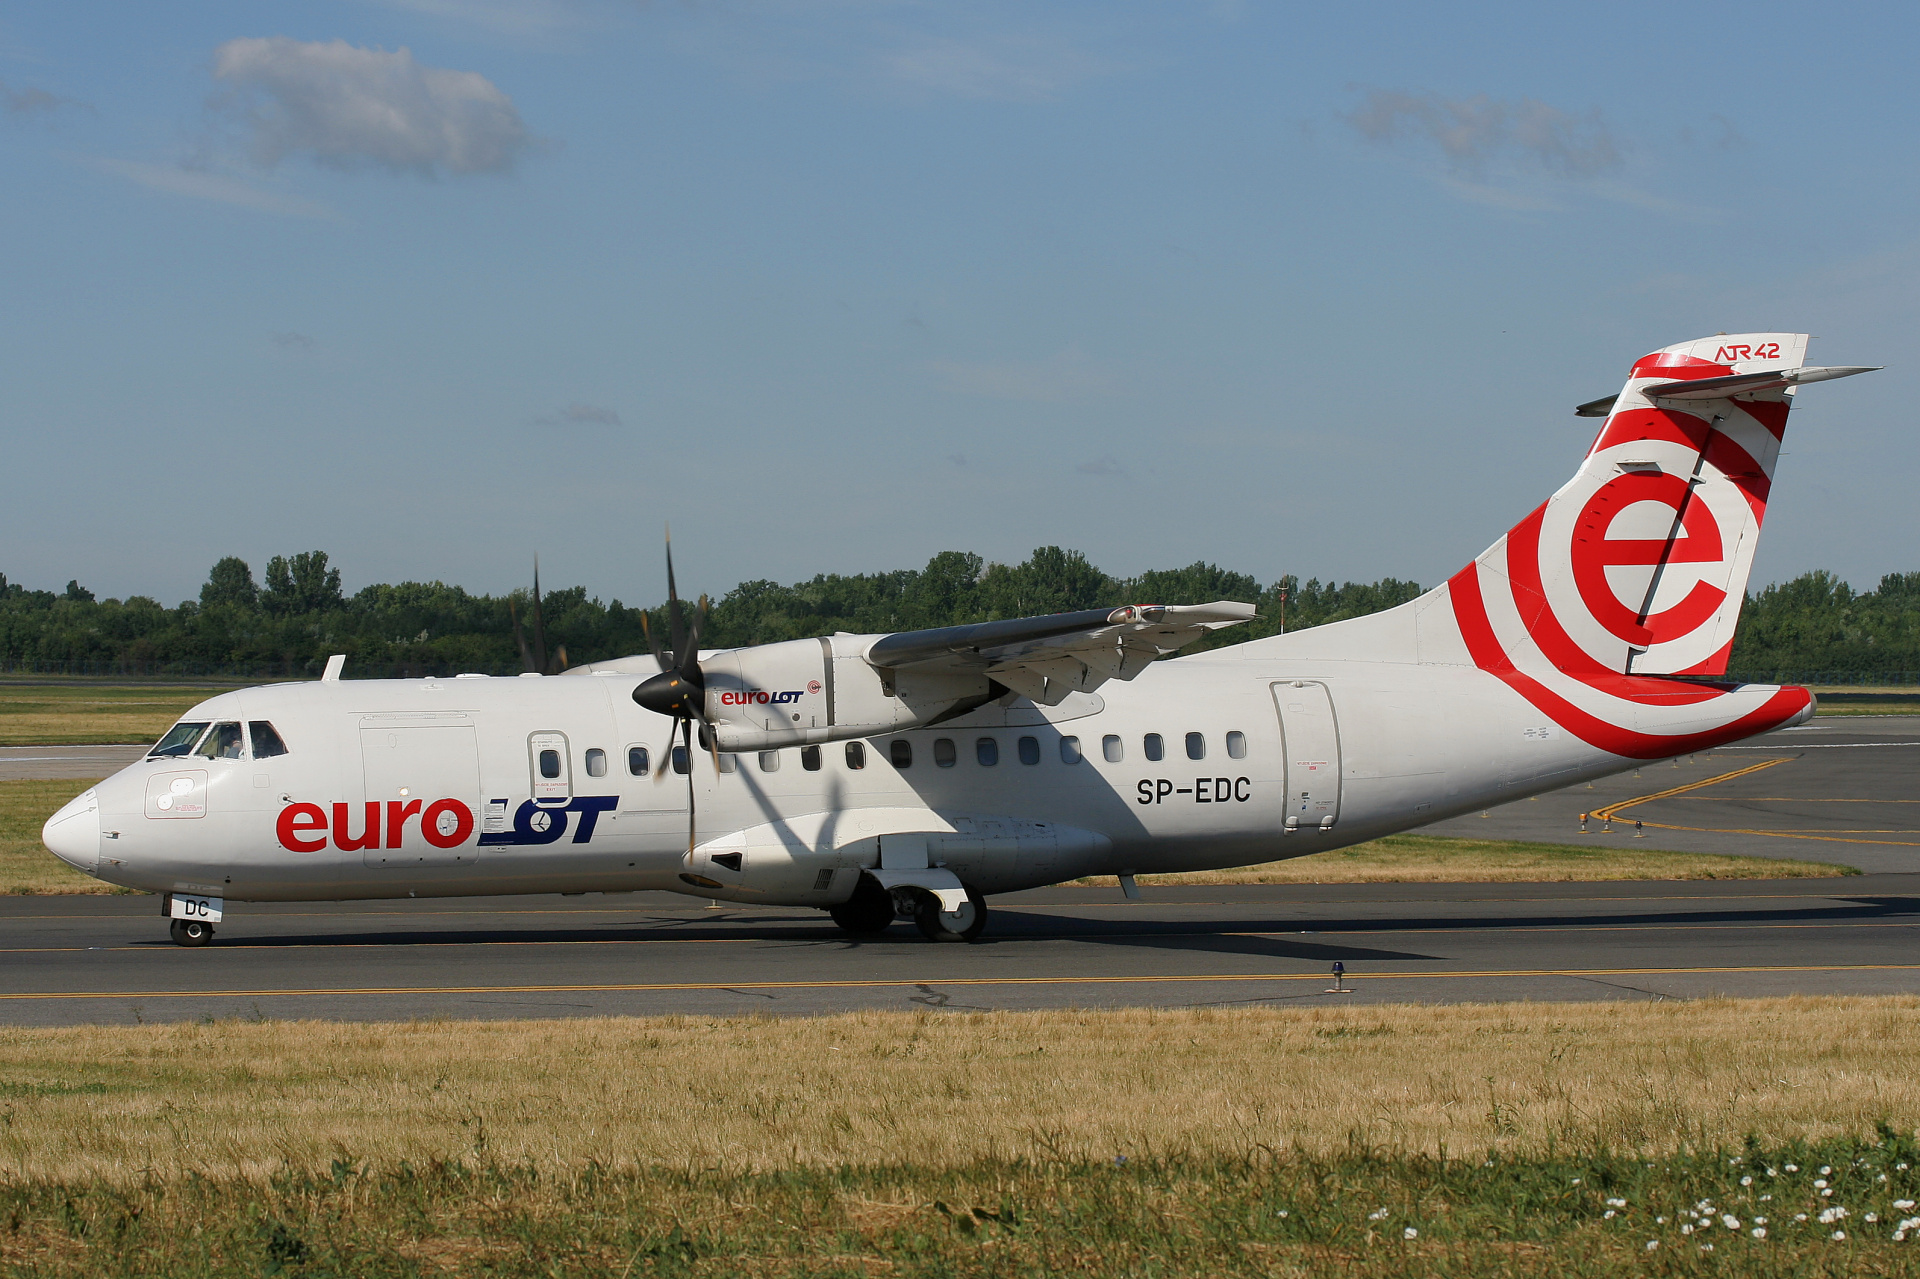 SP-EDC (Aircraft » EPWA Spotting » ATR 42 » EuroLOT)